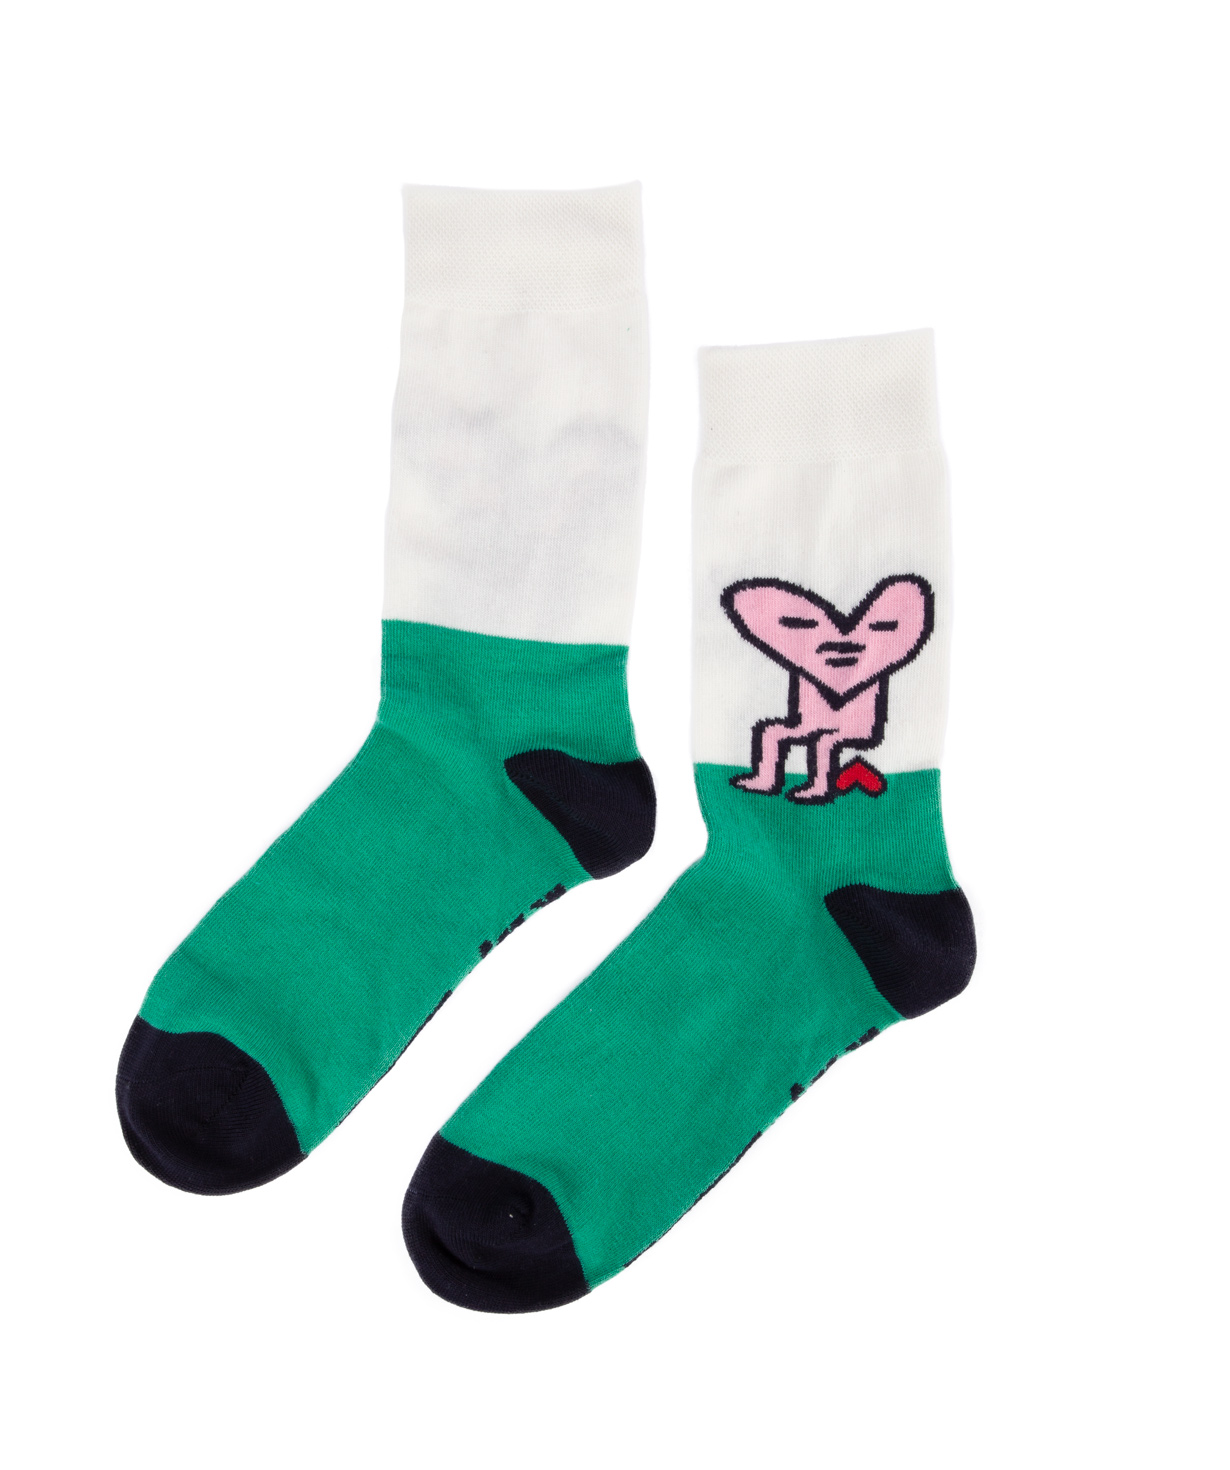 Носки `Dobby socks` цердце №1